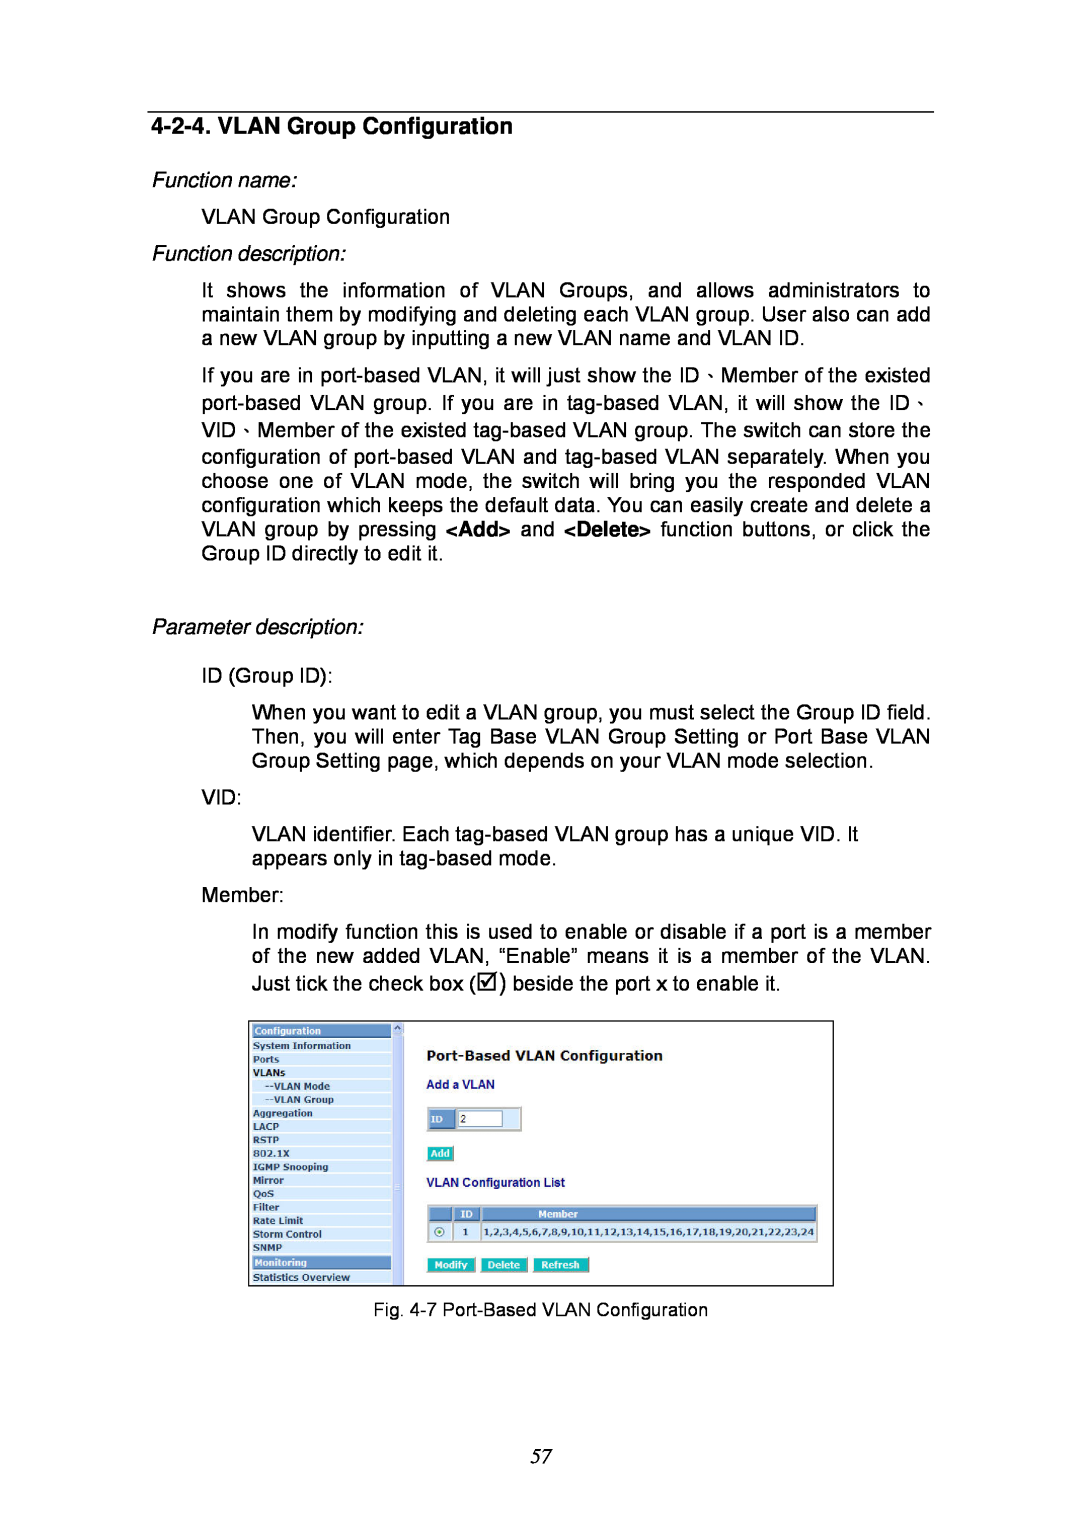 KTI Networks KGS-2404 manual VLAN Group Configuration, Function name, Function description, Parameter description 